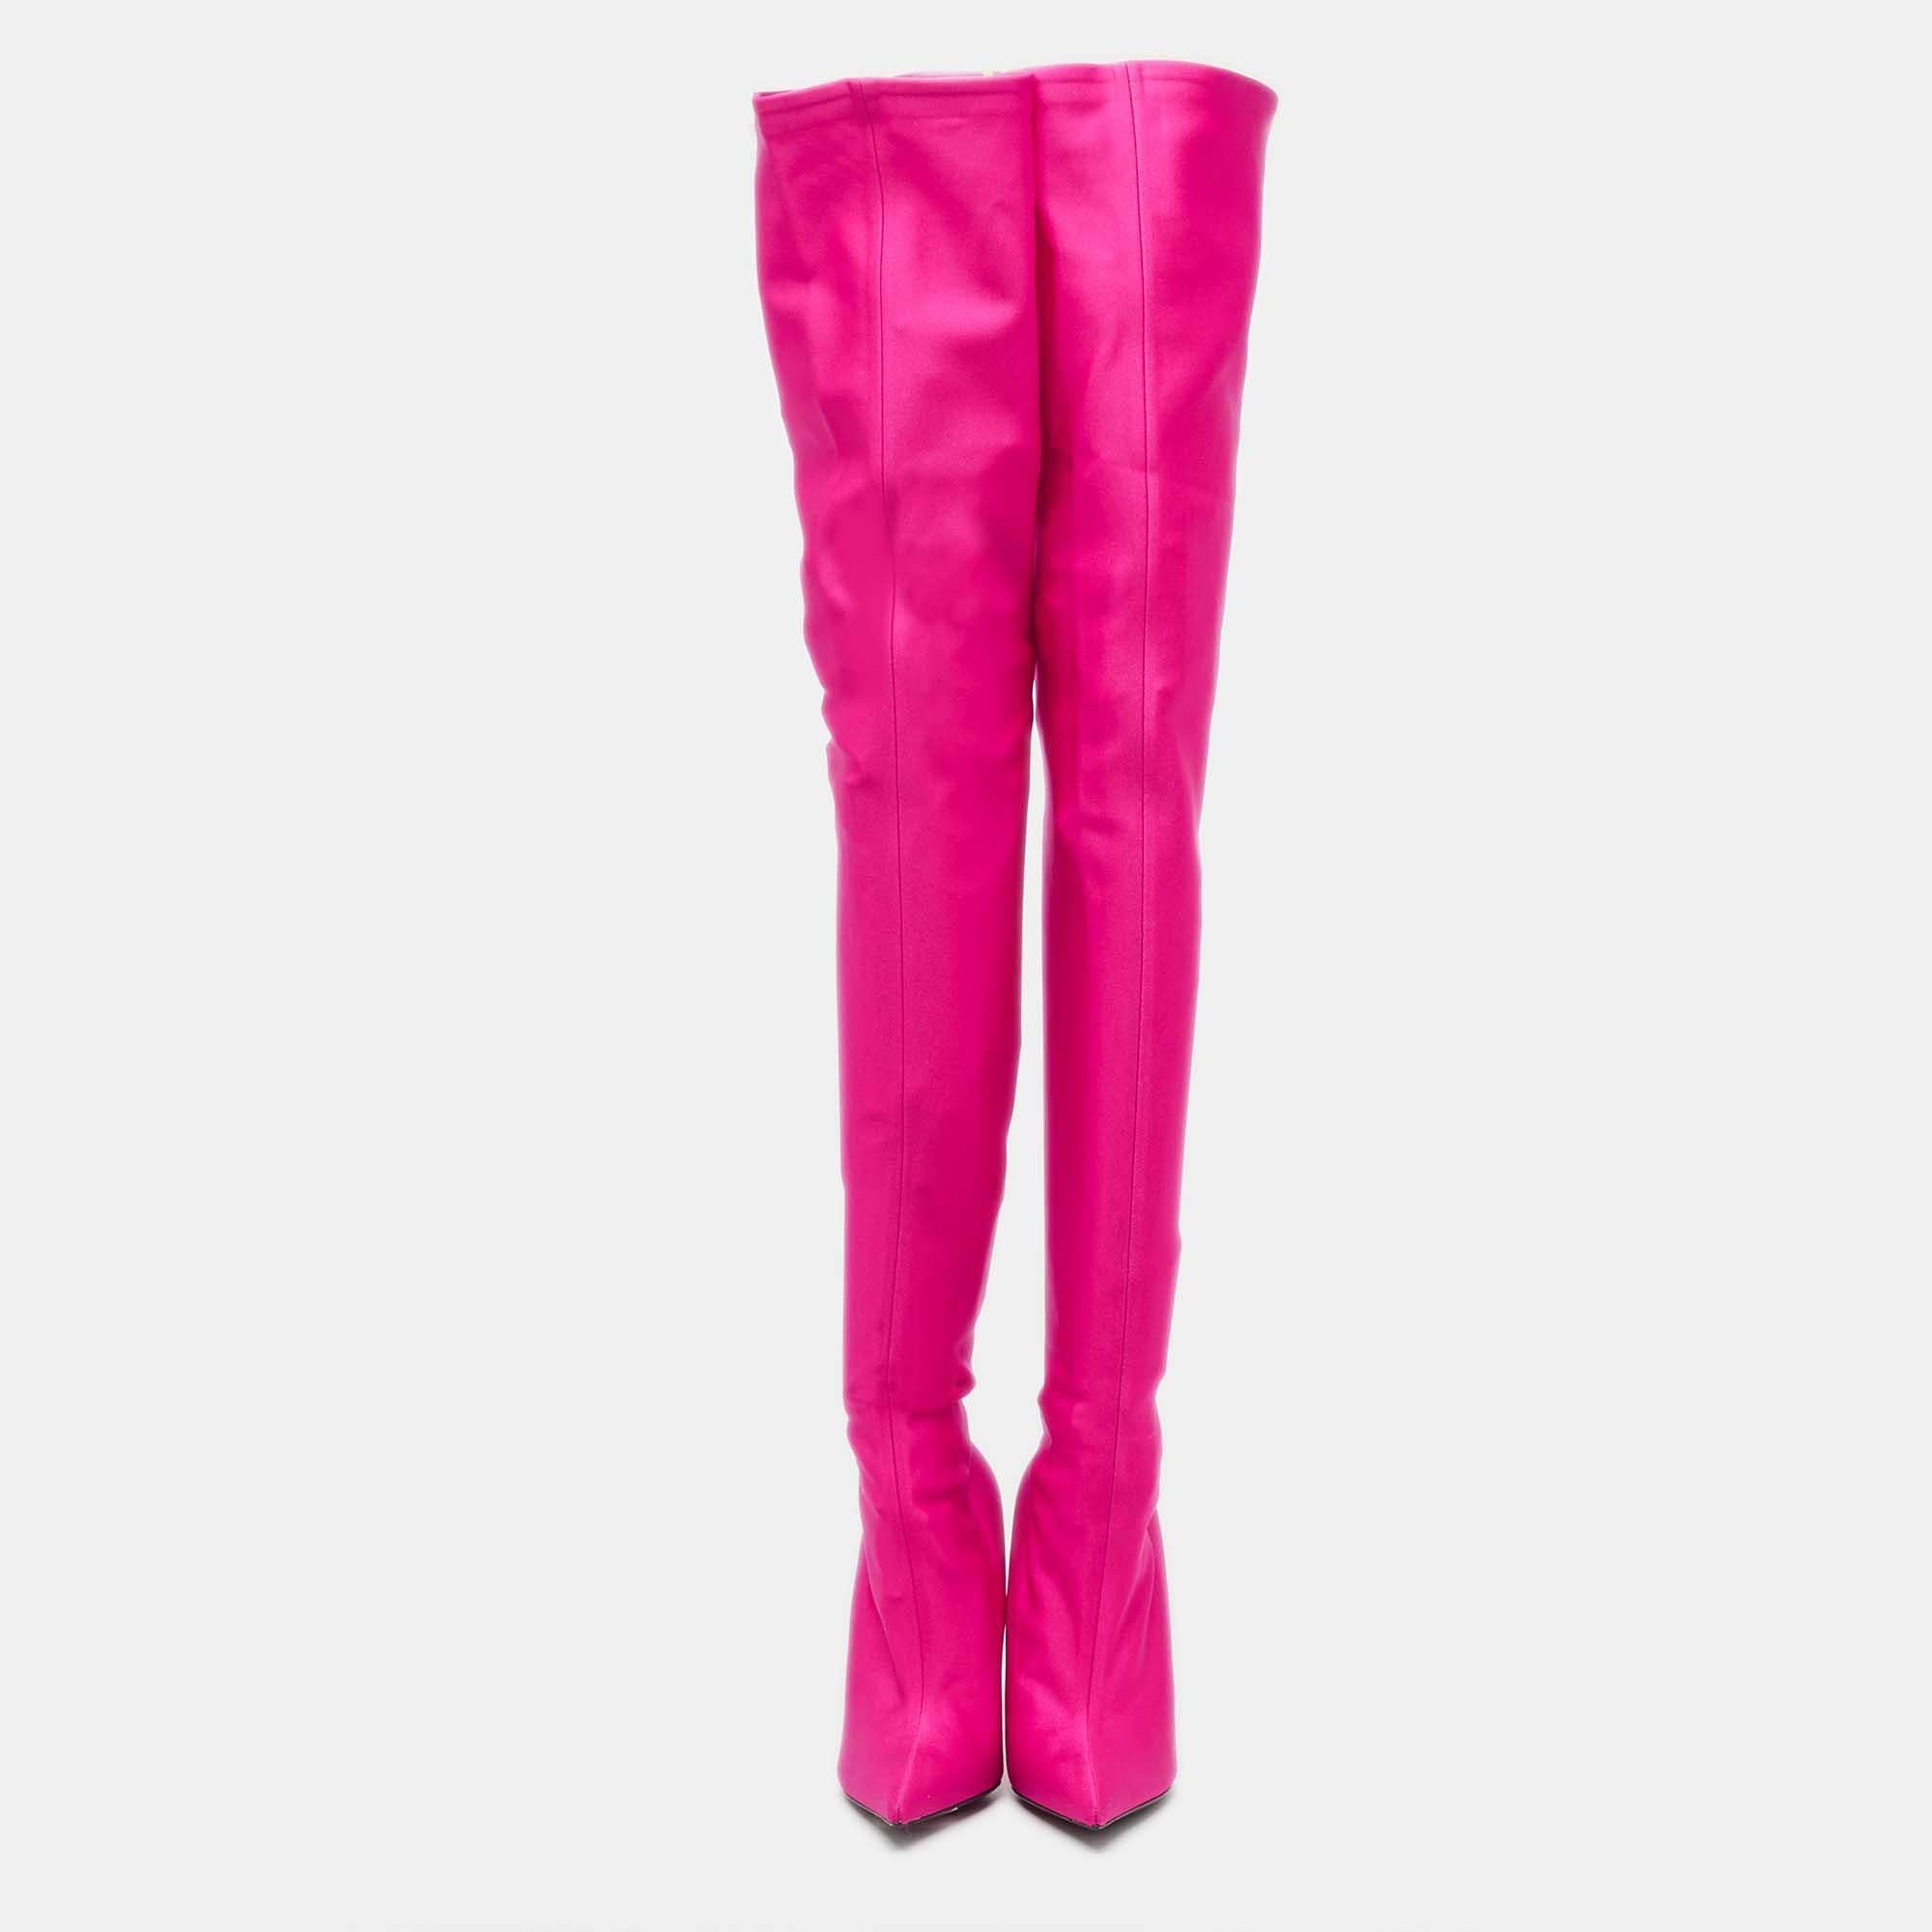 Die Balenciaga Knife Stiefel sind mit Raffinesse gefertigt und ein echtes Statement-Paar. Der leuchtend rosafarbene Satin umspielt anmutig Ihre Beine, während die schlanke Silhouette Ihre Figur streckt. Mit ihrer spitzen Spitze und dem schmalen